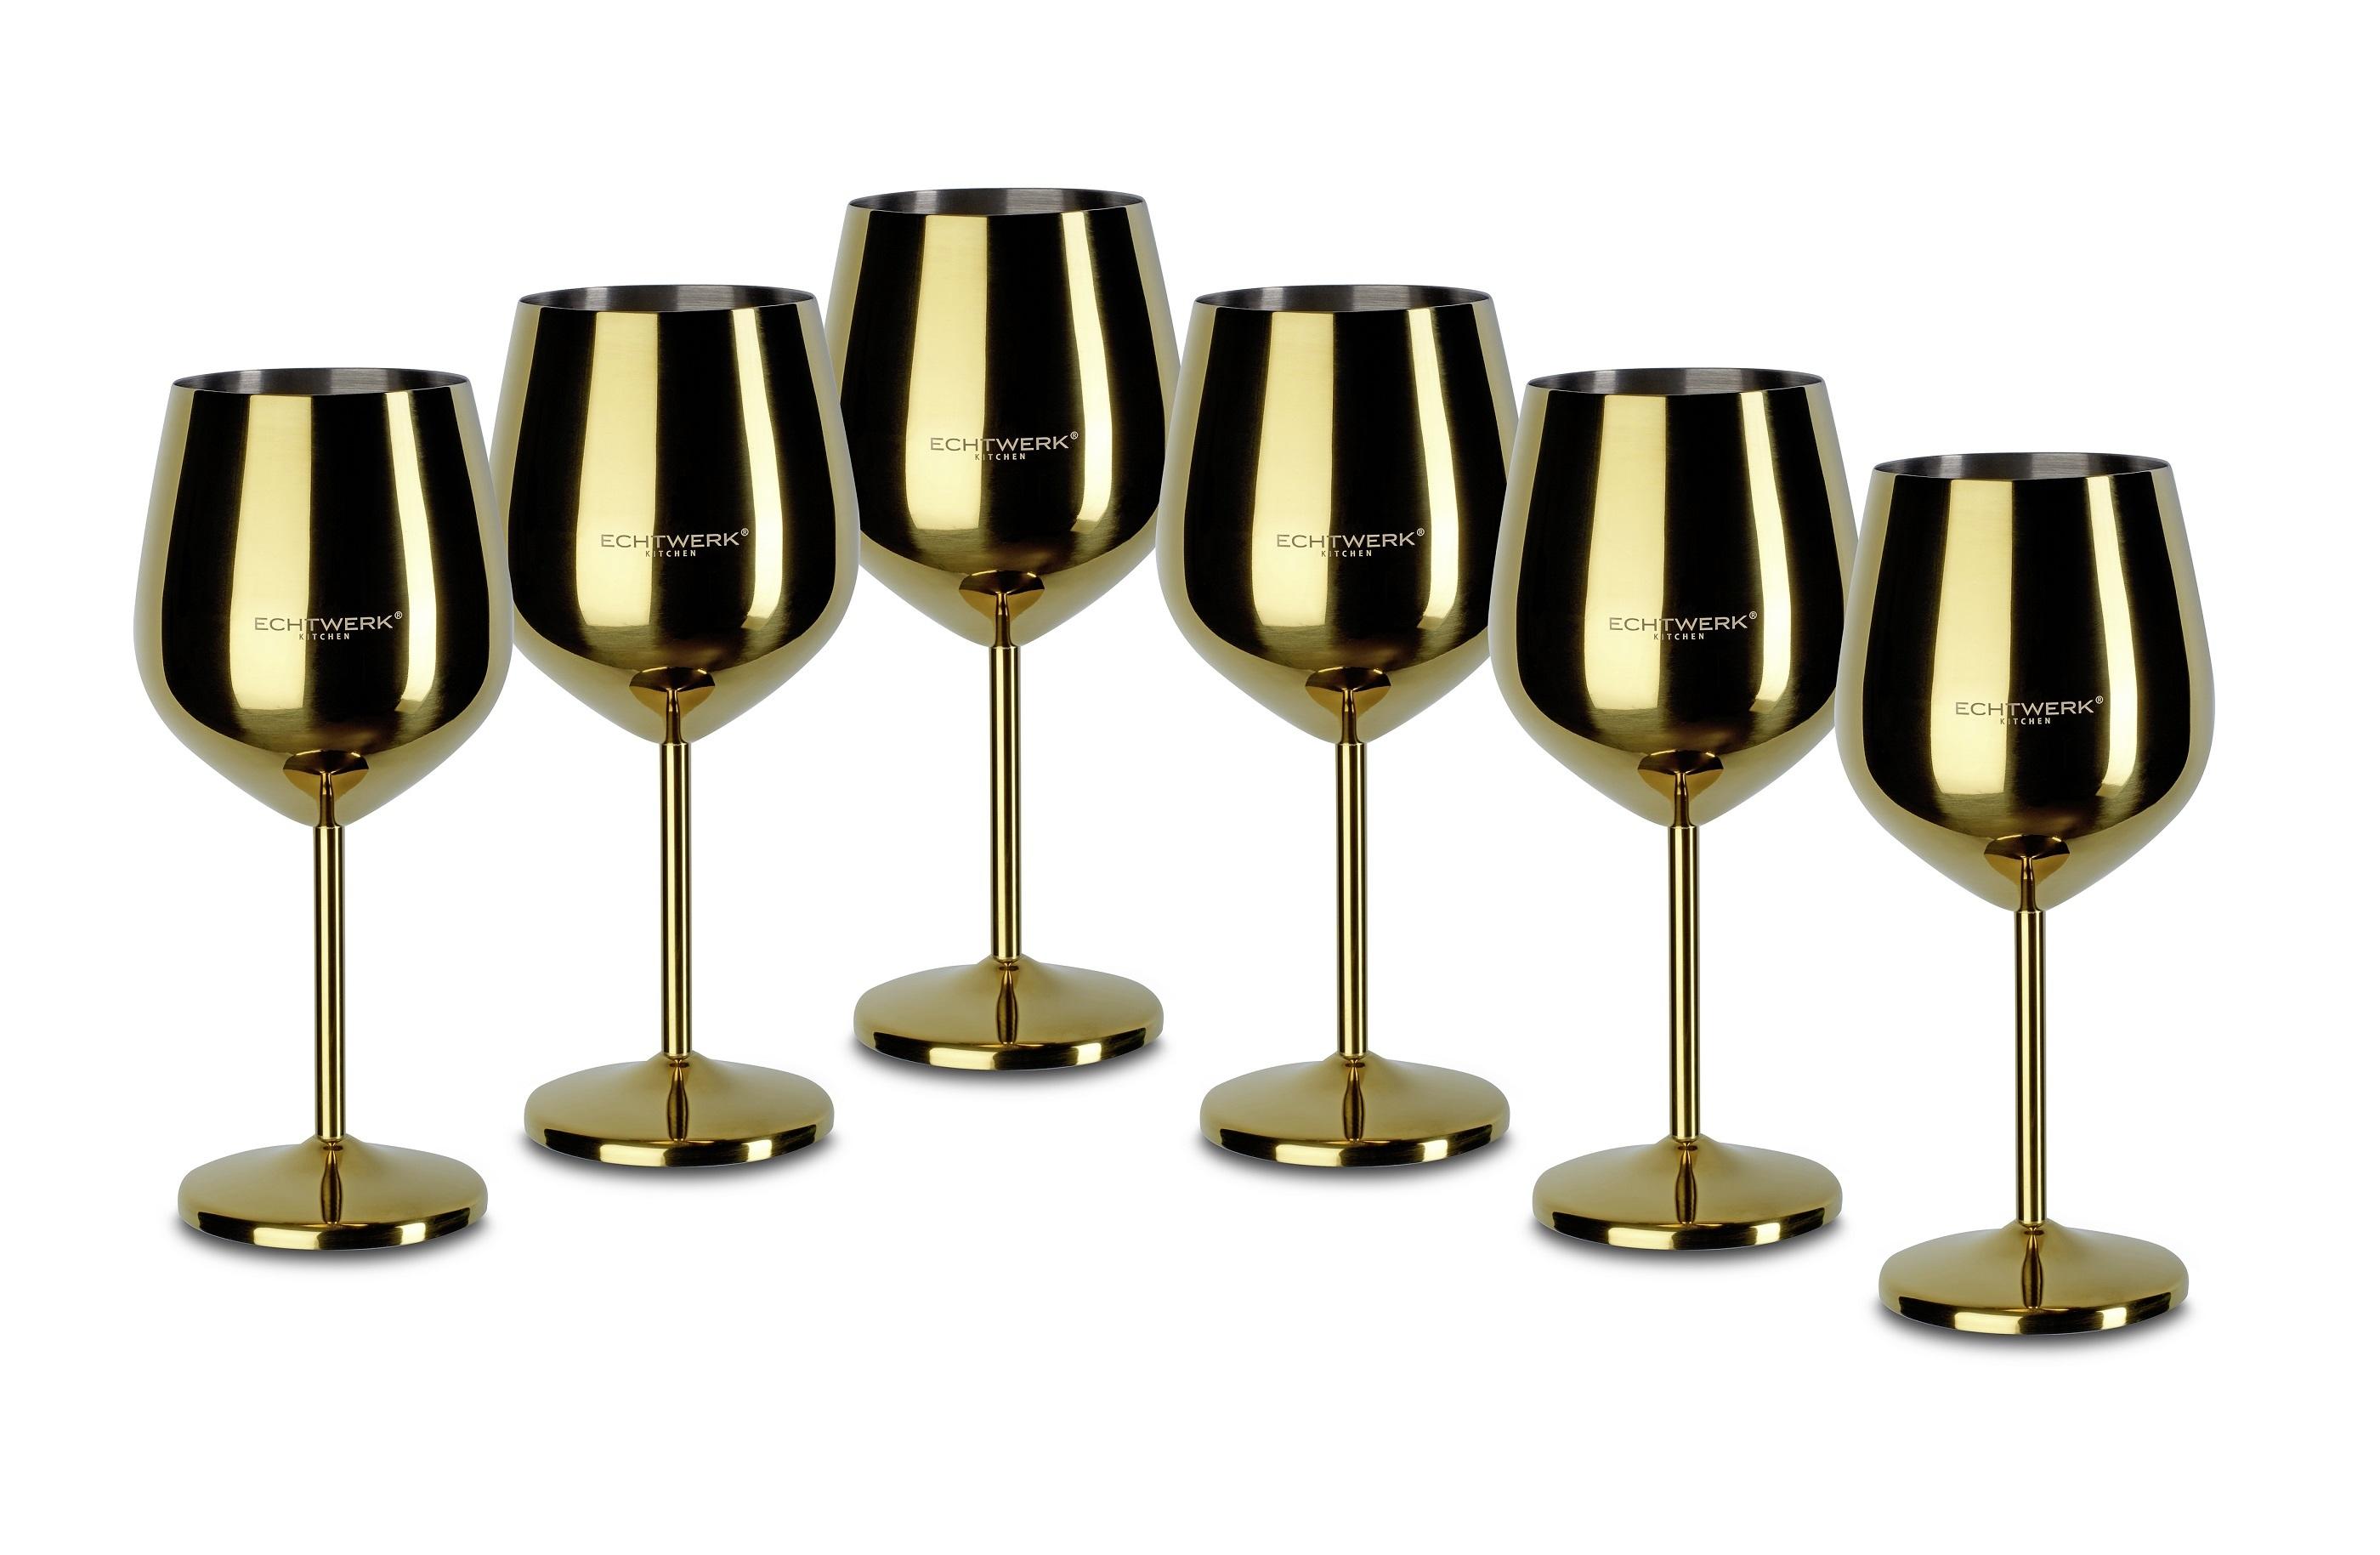 Sechs Weingläser aus Metall in Goldfarben kaufen